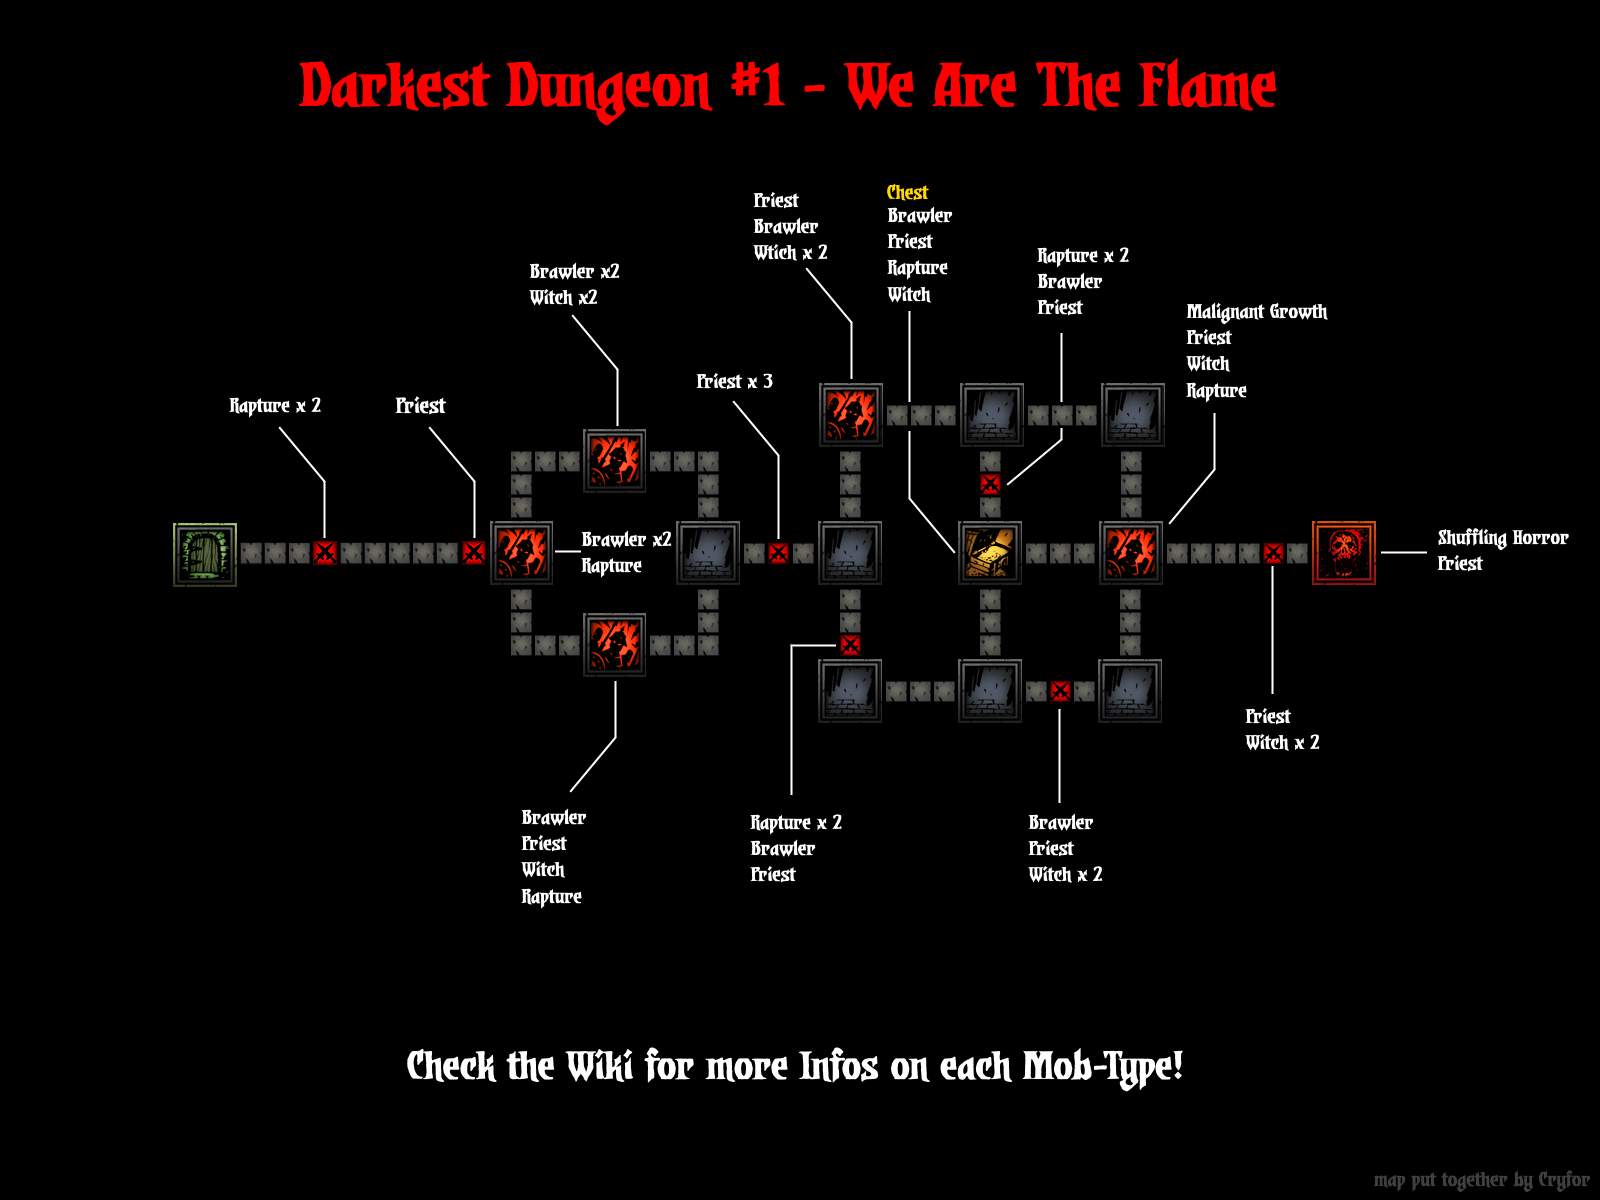 Darkest dungeon kill the swine prince